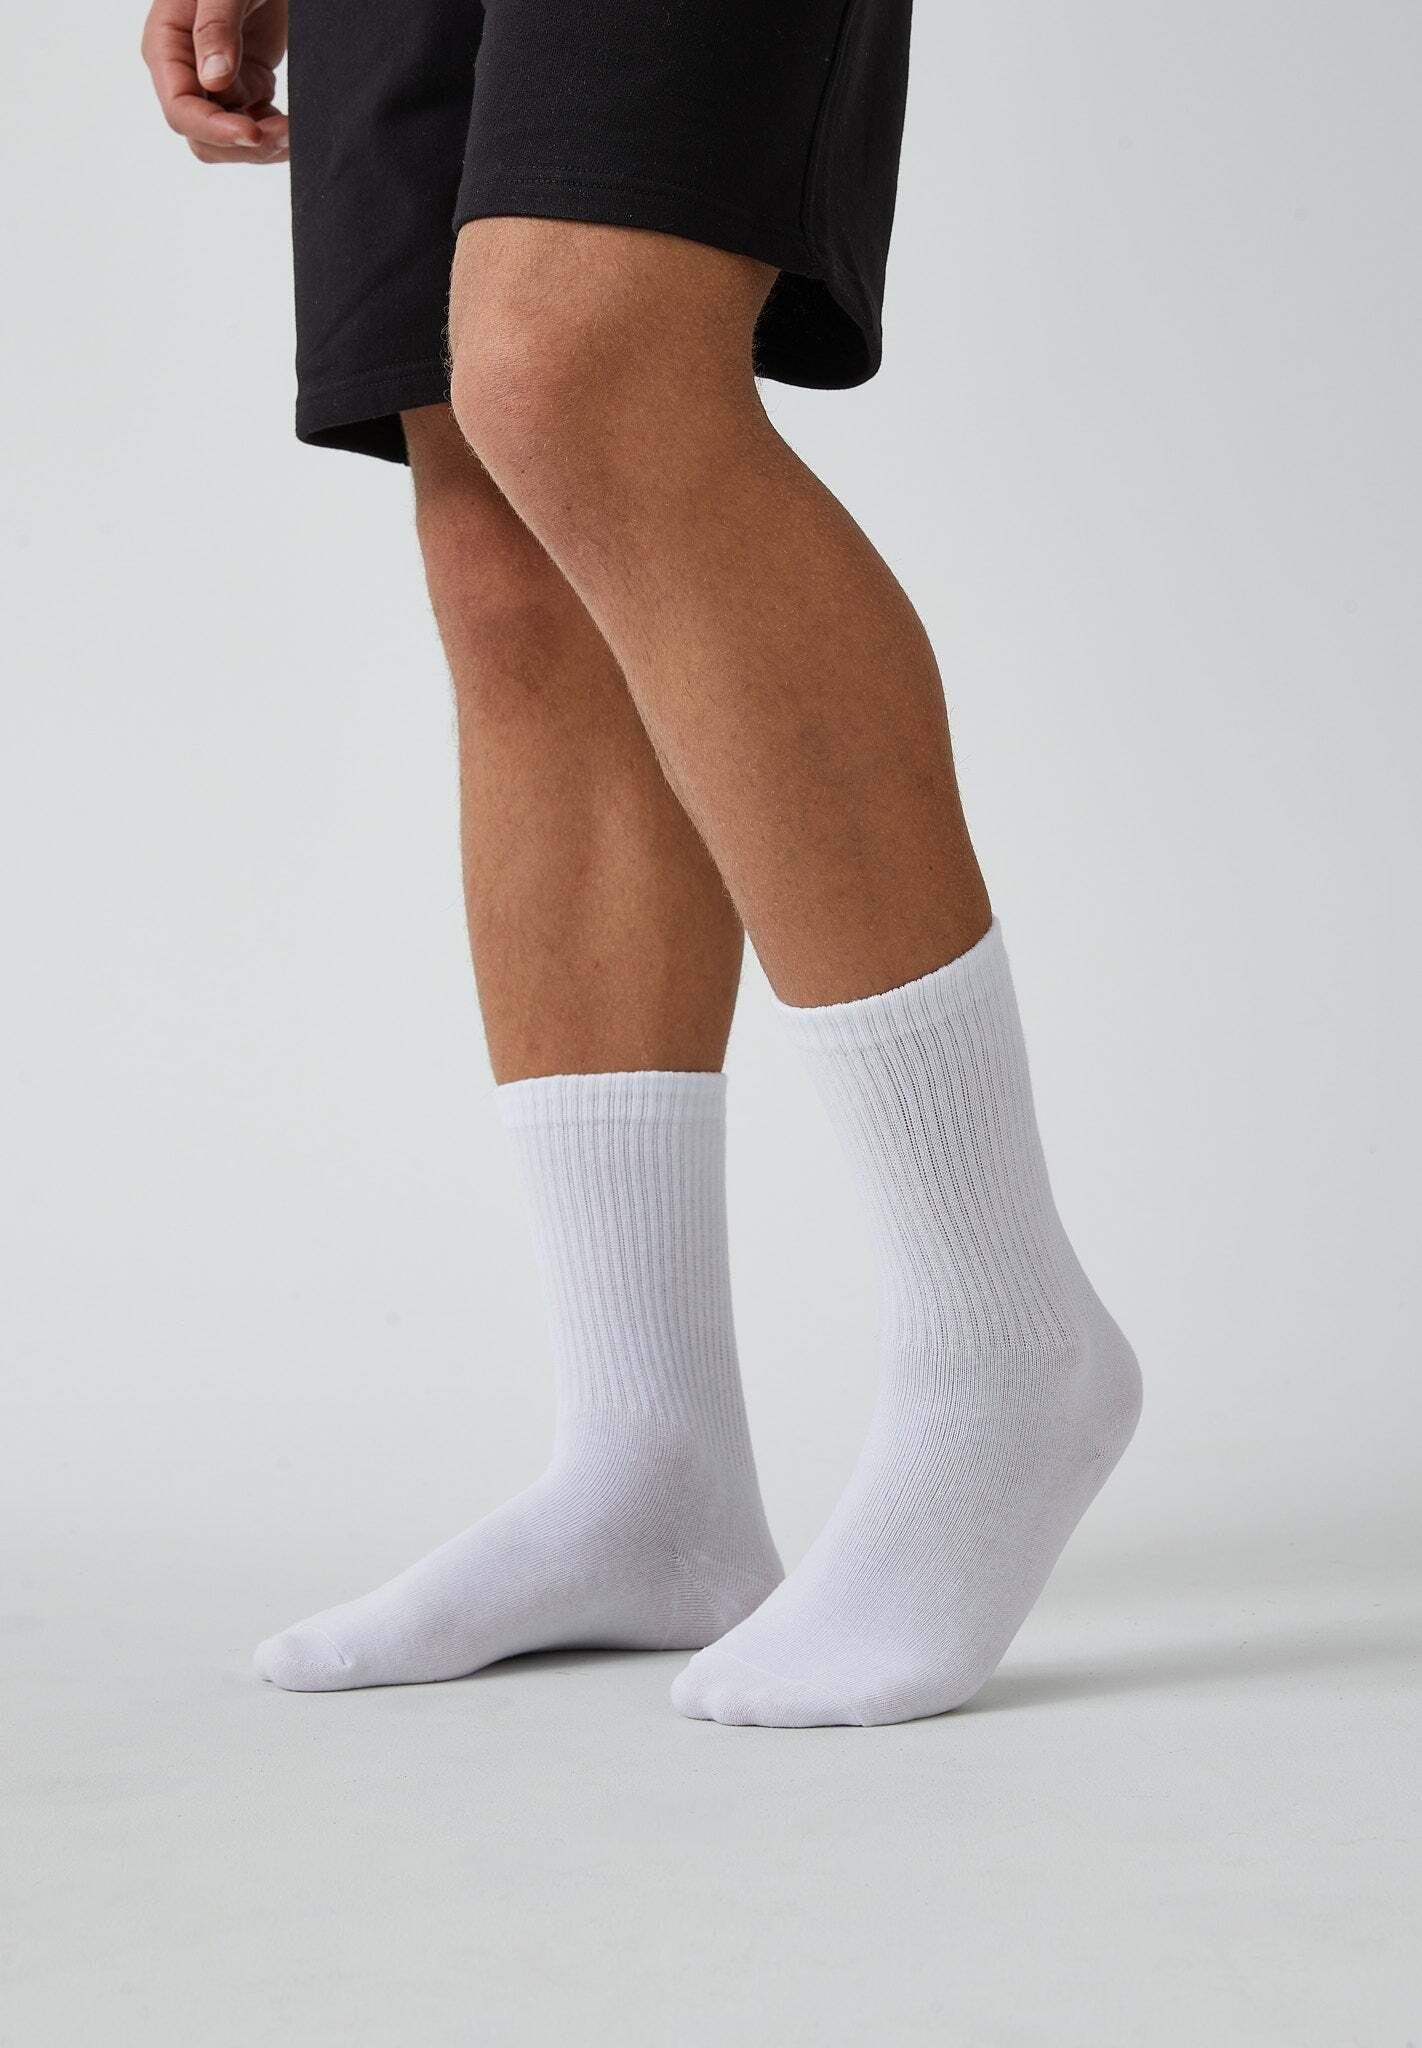 für Hohe Sportsocken SNOCKS Damen Herren Weiß 02 aus Tennissocken stylish & für Tennissocken jedes Bio-Baumwolle, (4-Paar) Outfit